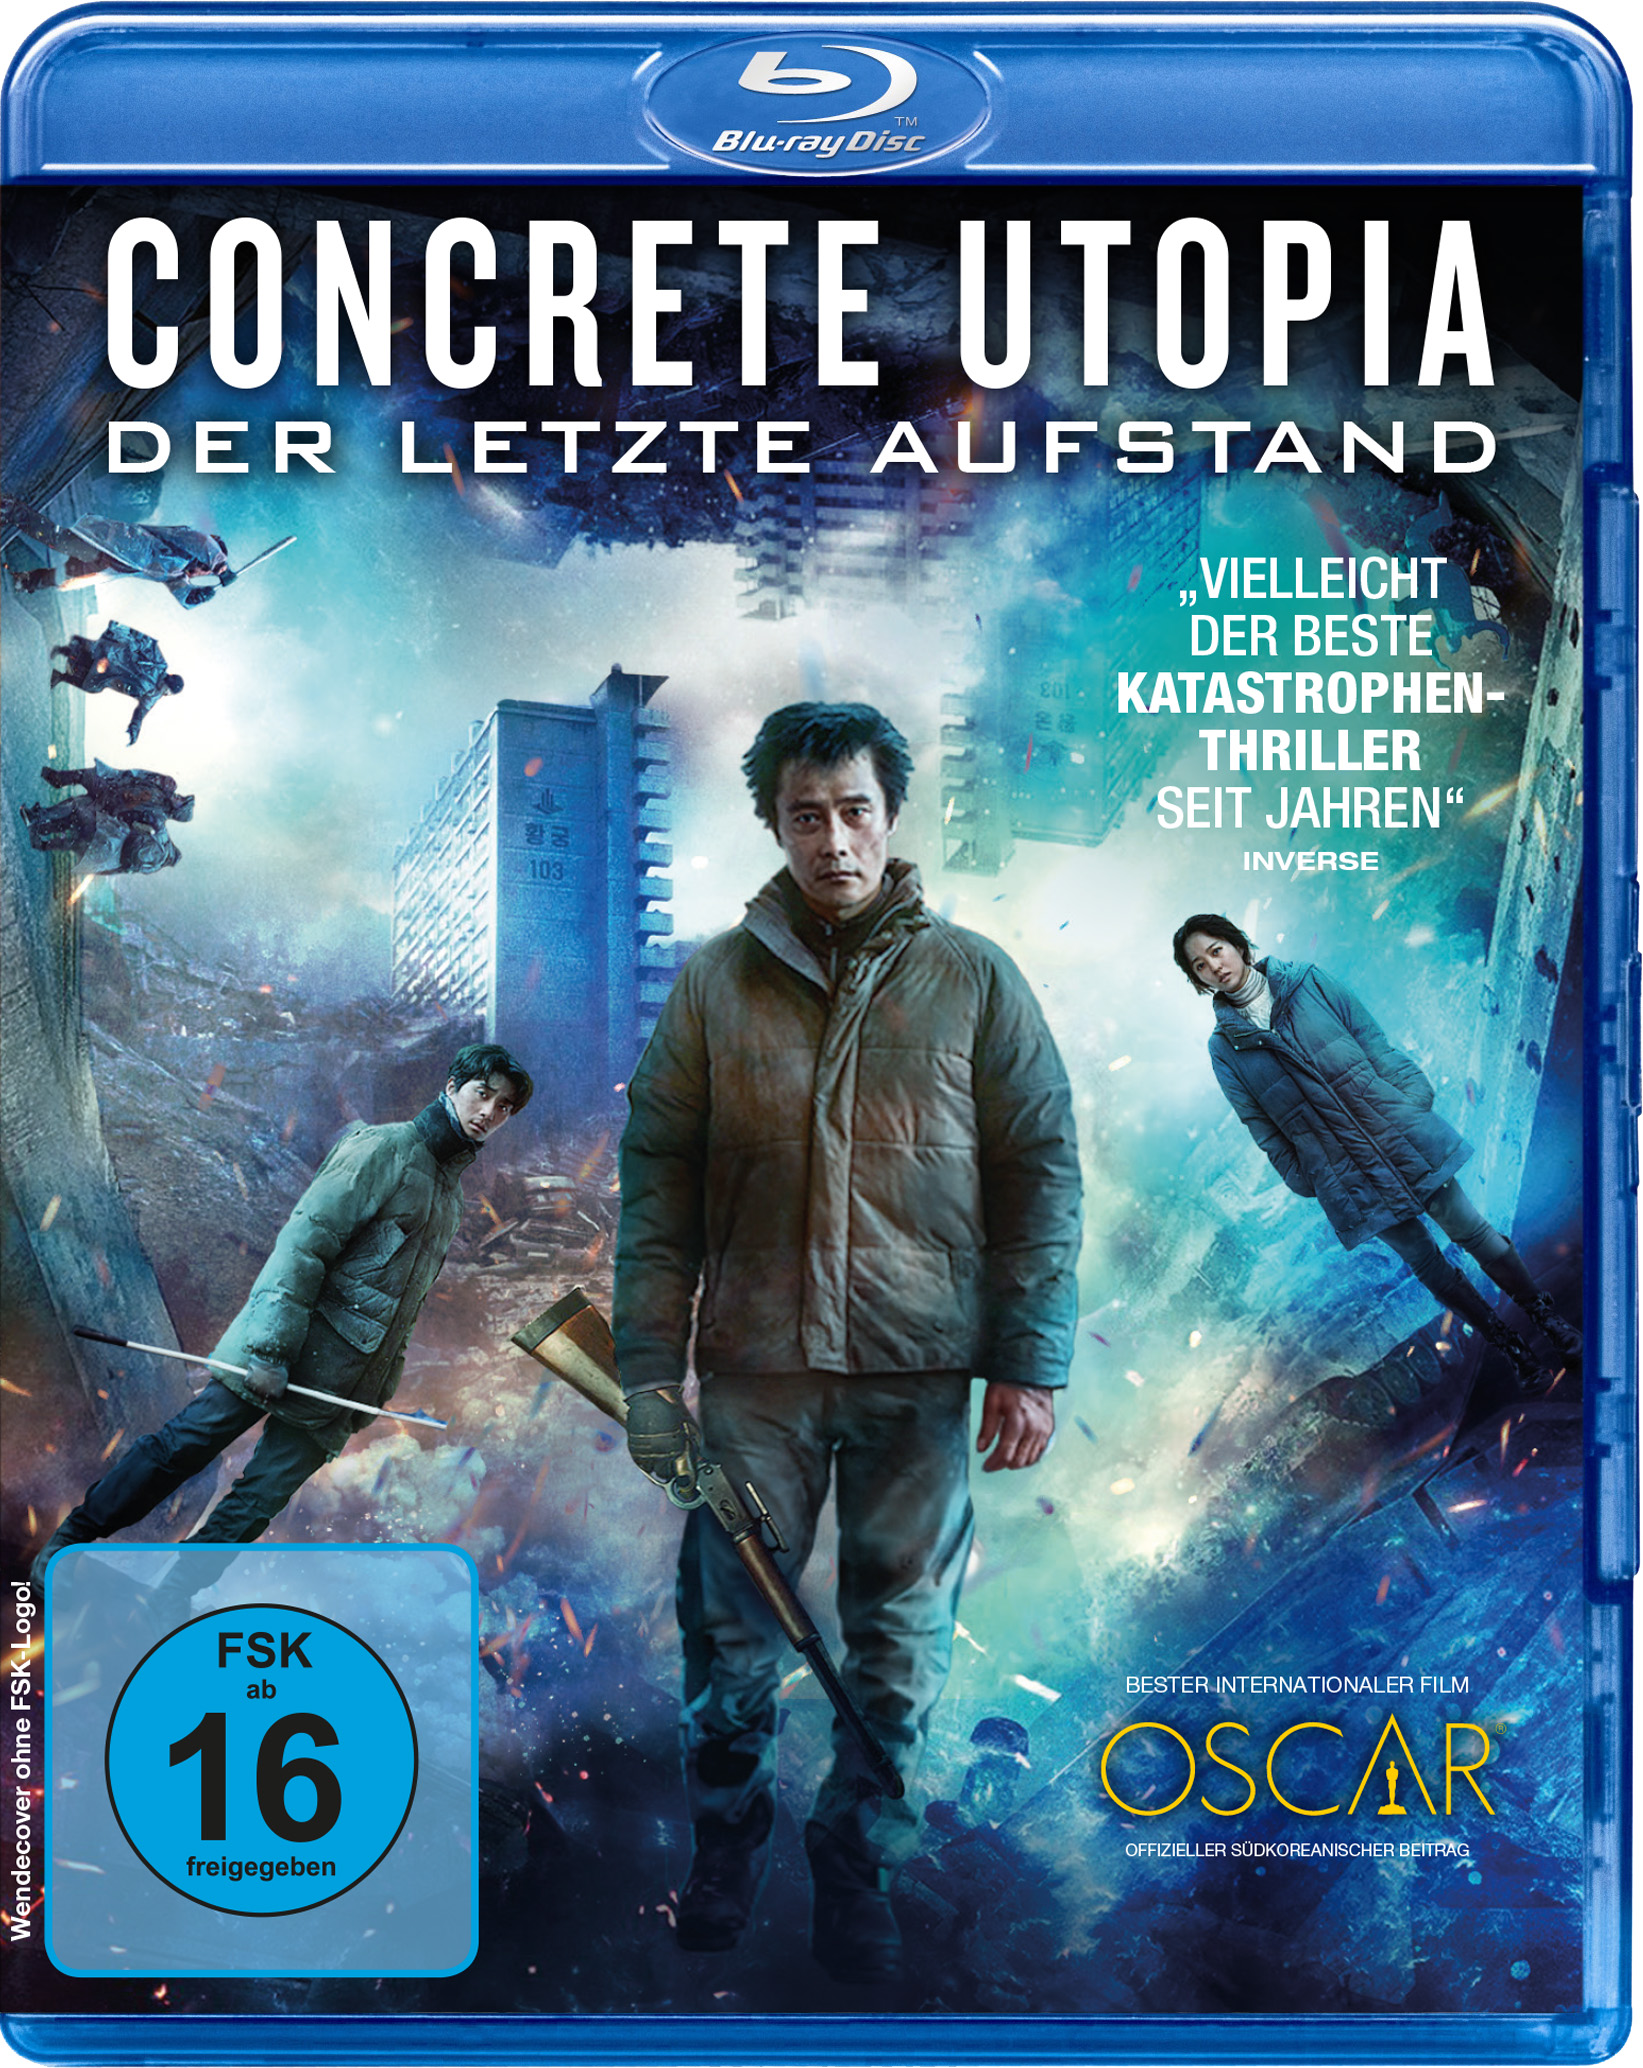 Concrete Utopia - Der letzte Aufstand (Blu-ray)
